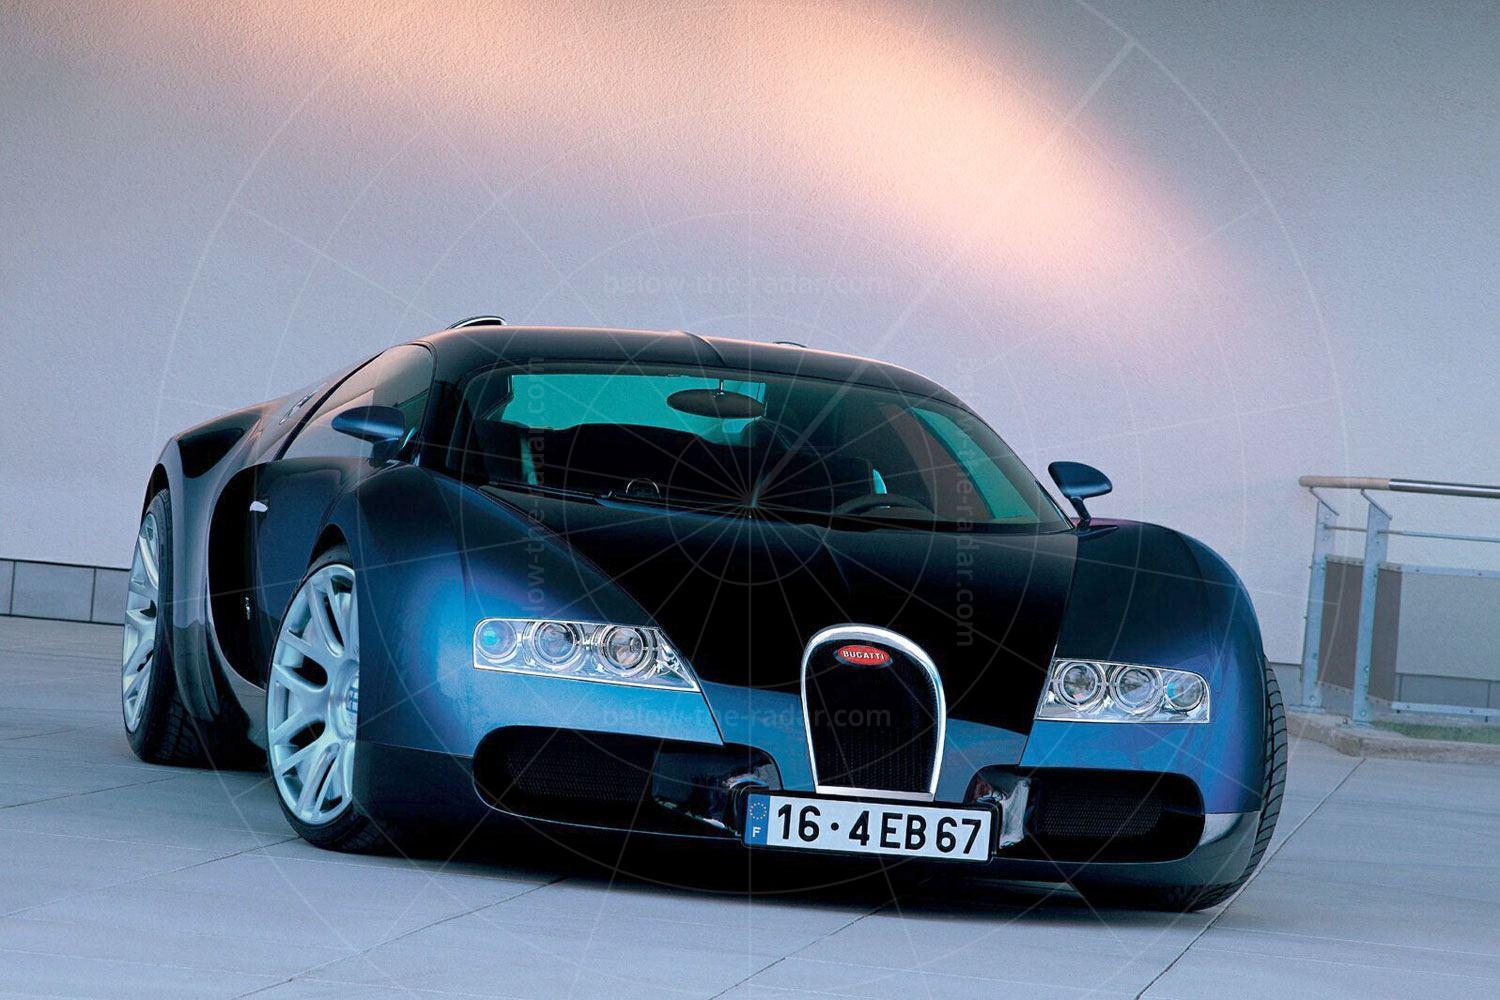 Bugatti EB 18/4 Veyron concept Pic: Bugatti | 